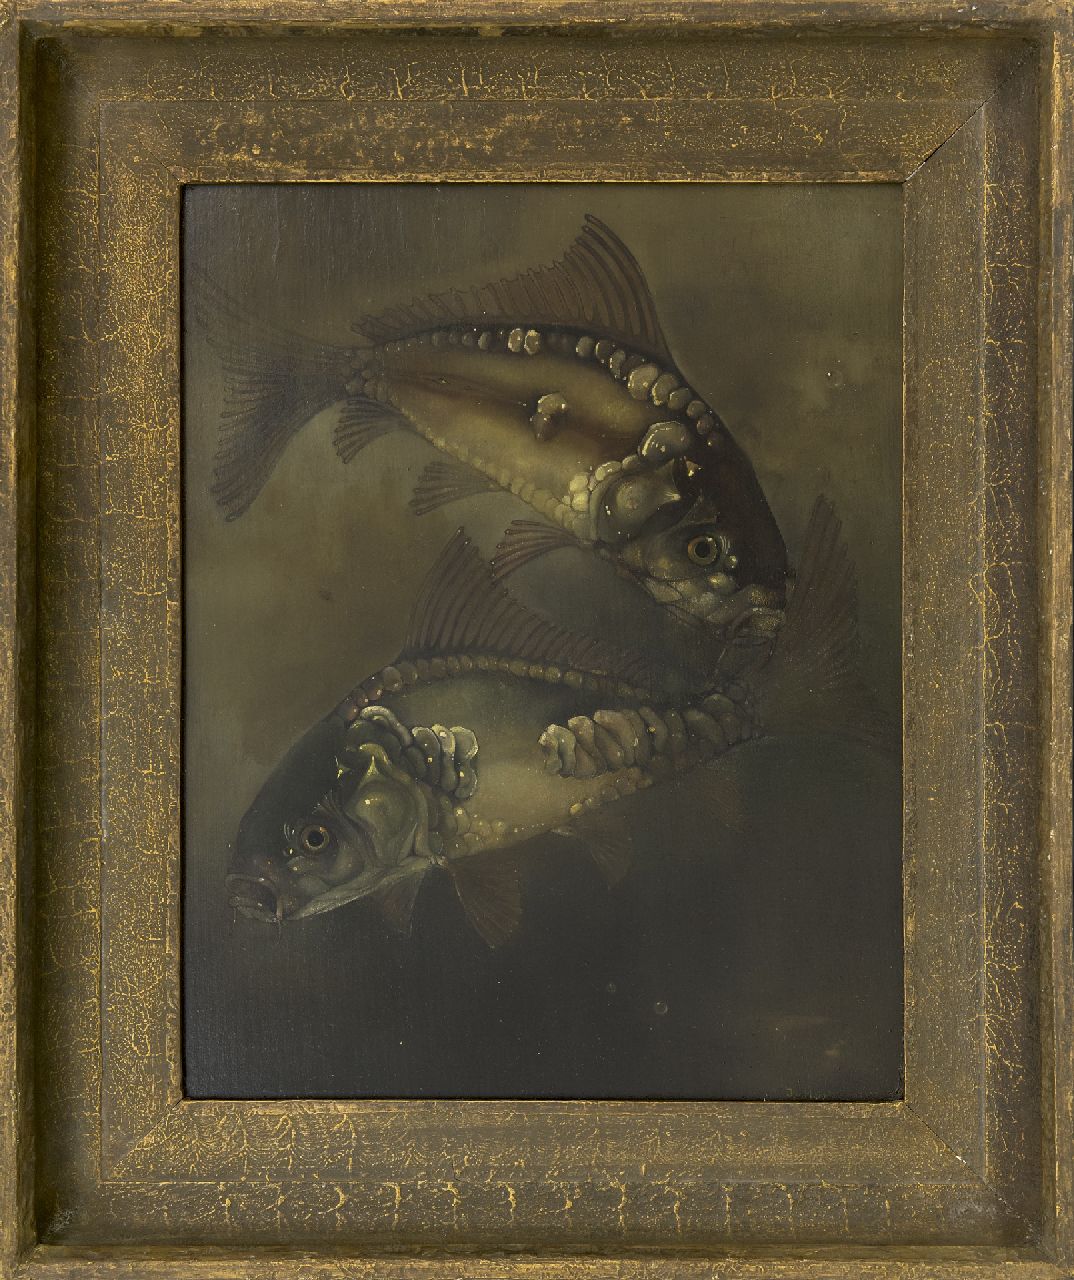 Hoboken J. van | Jacoba 'Jemmy' van Hoboken | Schilderijen te koop aangeboden | Spiegelkarpers, olieverf op paneel 40,2 x 32,3 cm, gesigneerd rechtsonder en gedateerd 1932